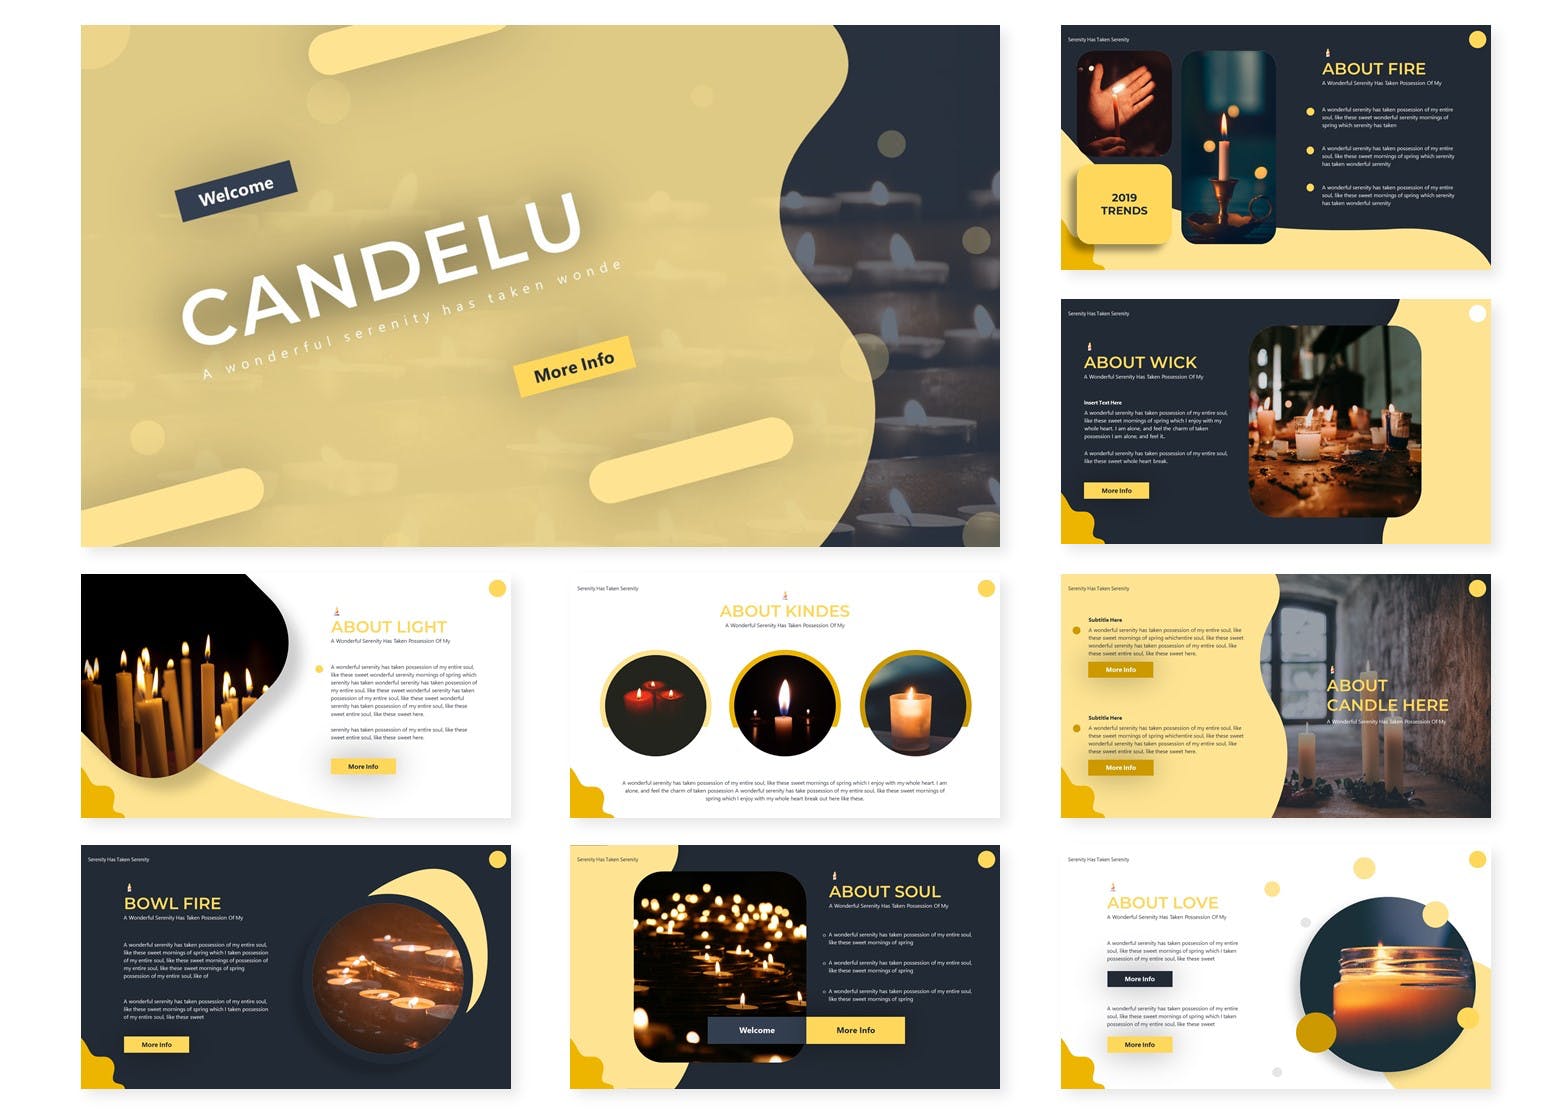 烛光蜡烛元素版式设计第一素材精选谷歌演示模板 Candelu | Google Slides Template插图(1)